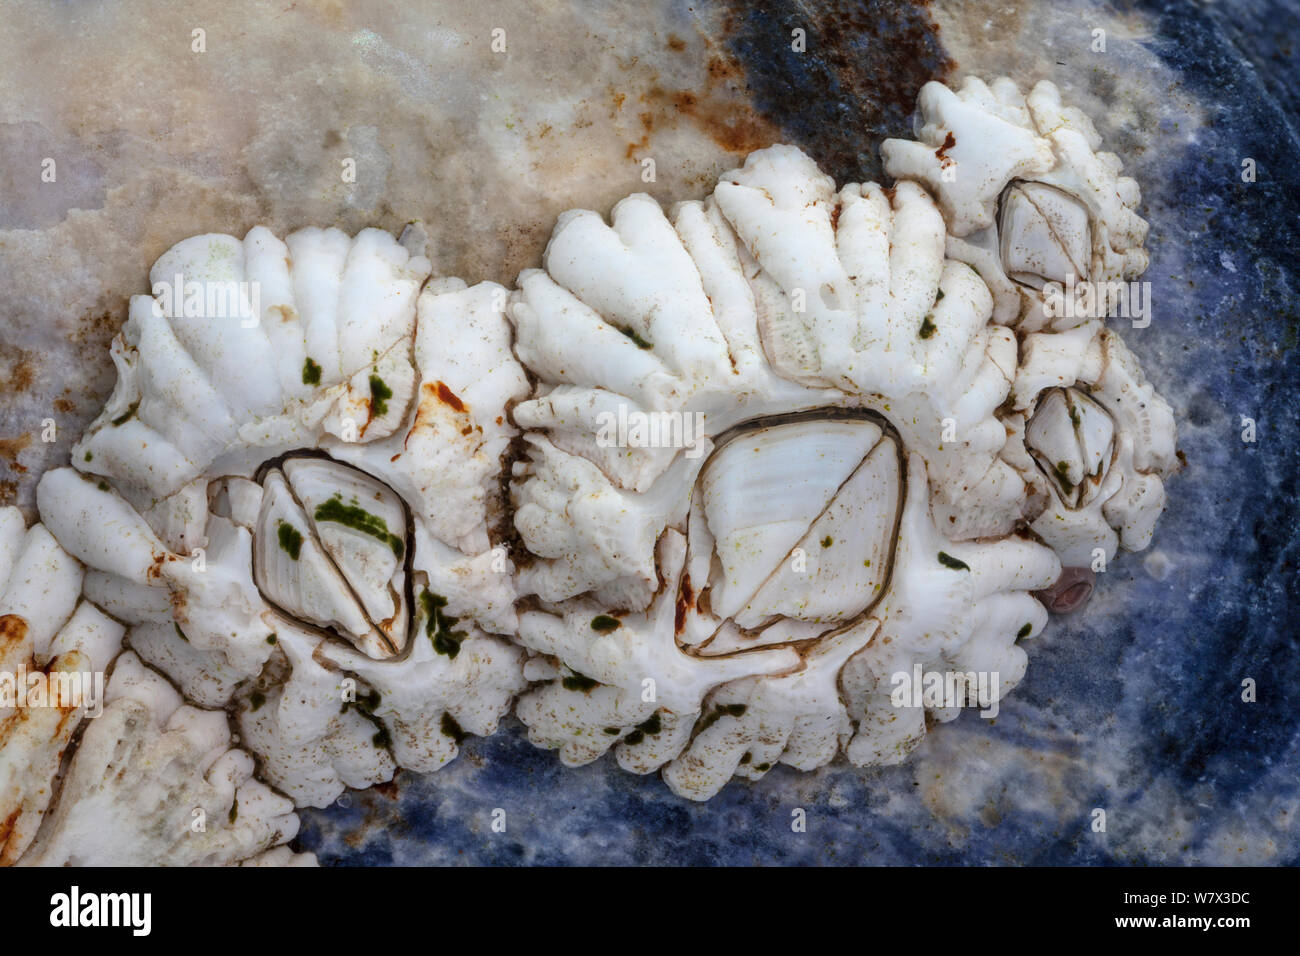 Acorn barnacle (Semibalanus balanoides) croissant sur coquille de moule commune (Mytilus edulis), Île de Skye, Ecosse, avril. Banque D'Images